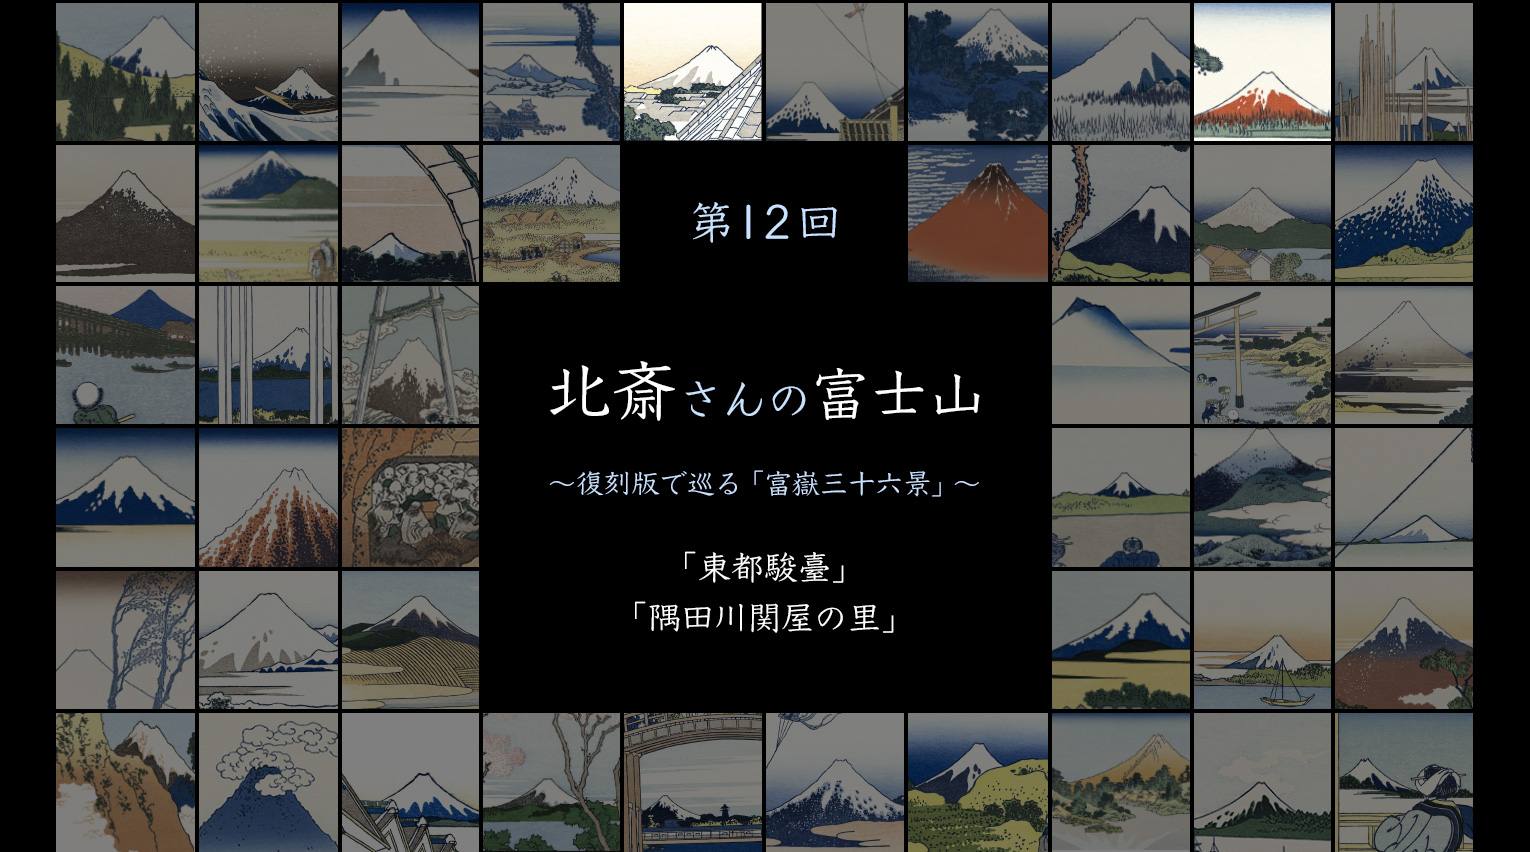 北斎さんの富士山 〜復刻版で見る「富嶽三十六景」〜 (12)【PR】 